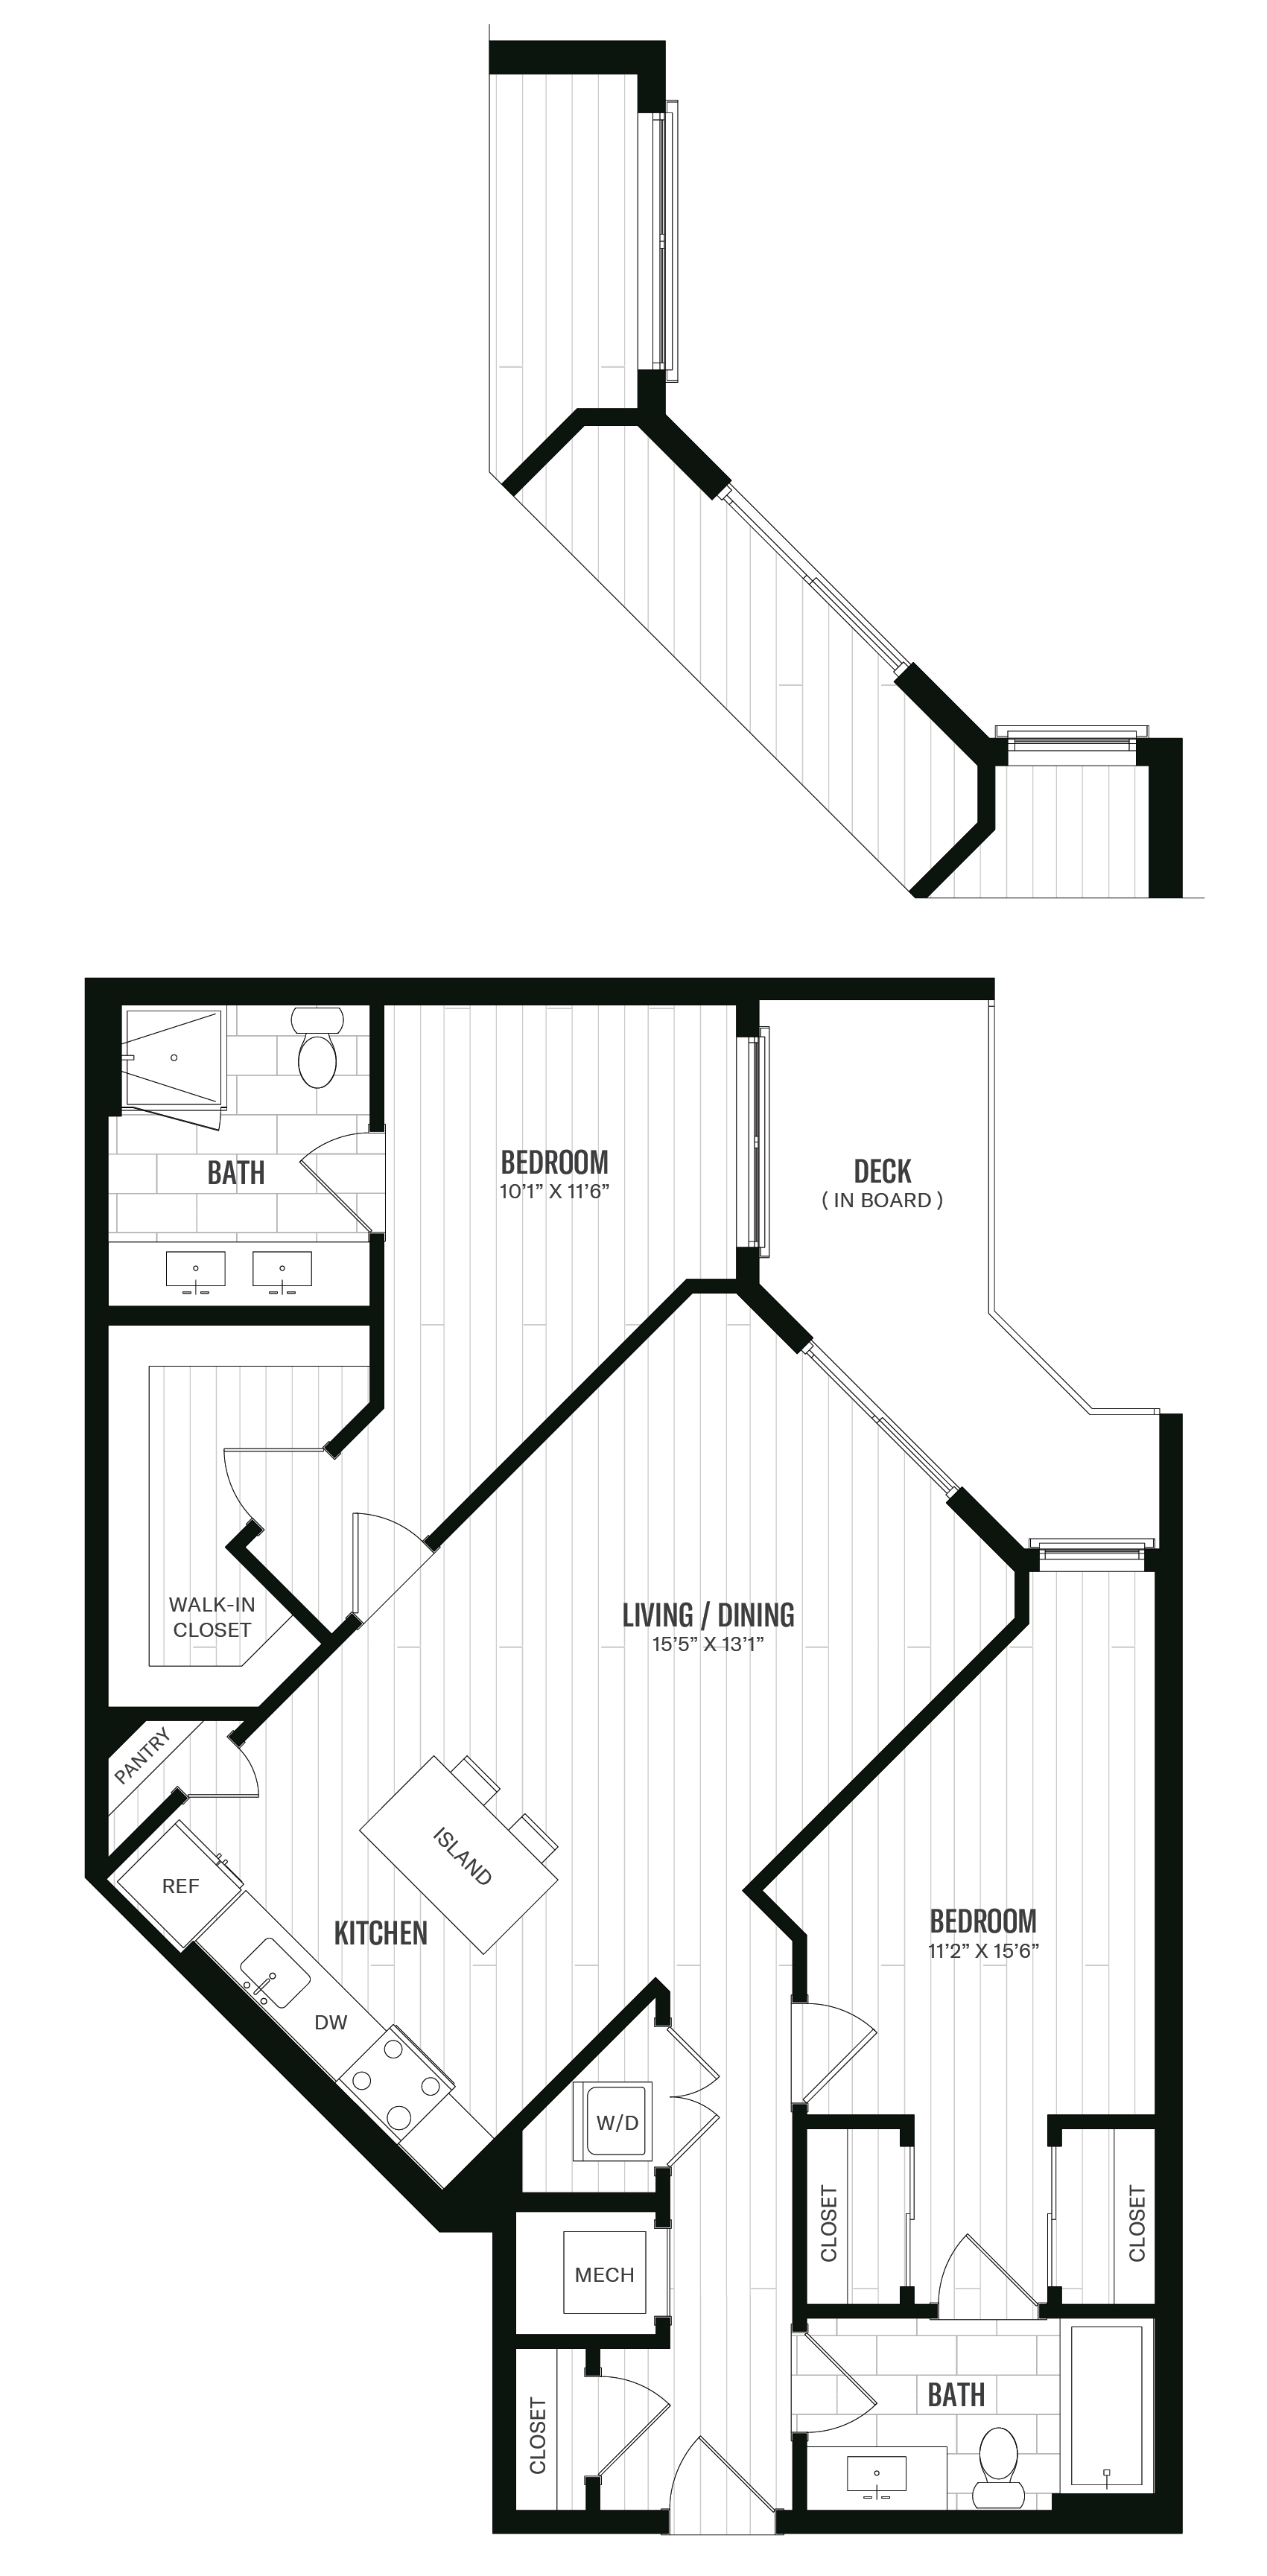 Floorplan image of unit 457